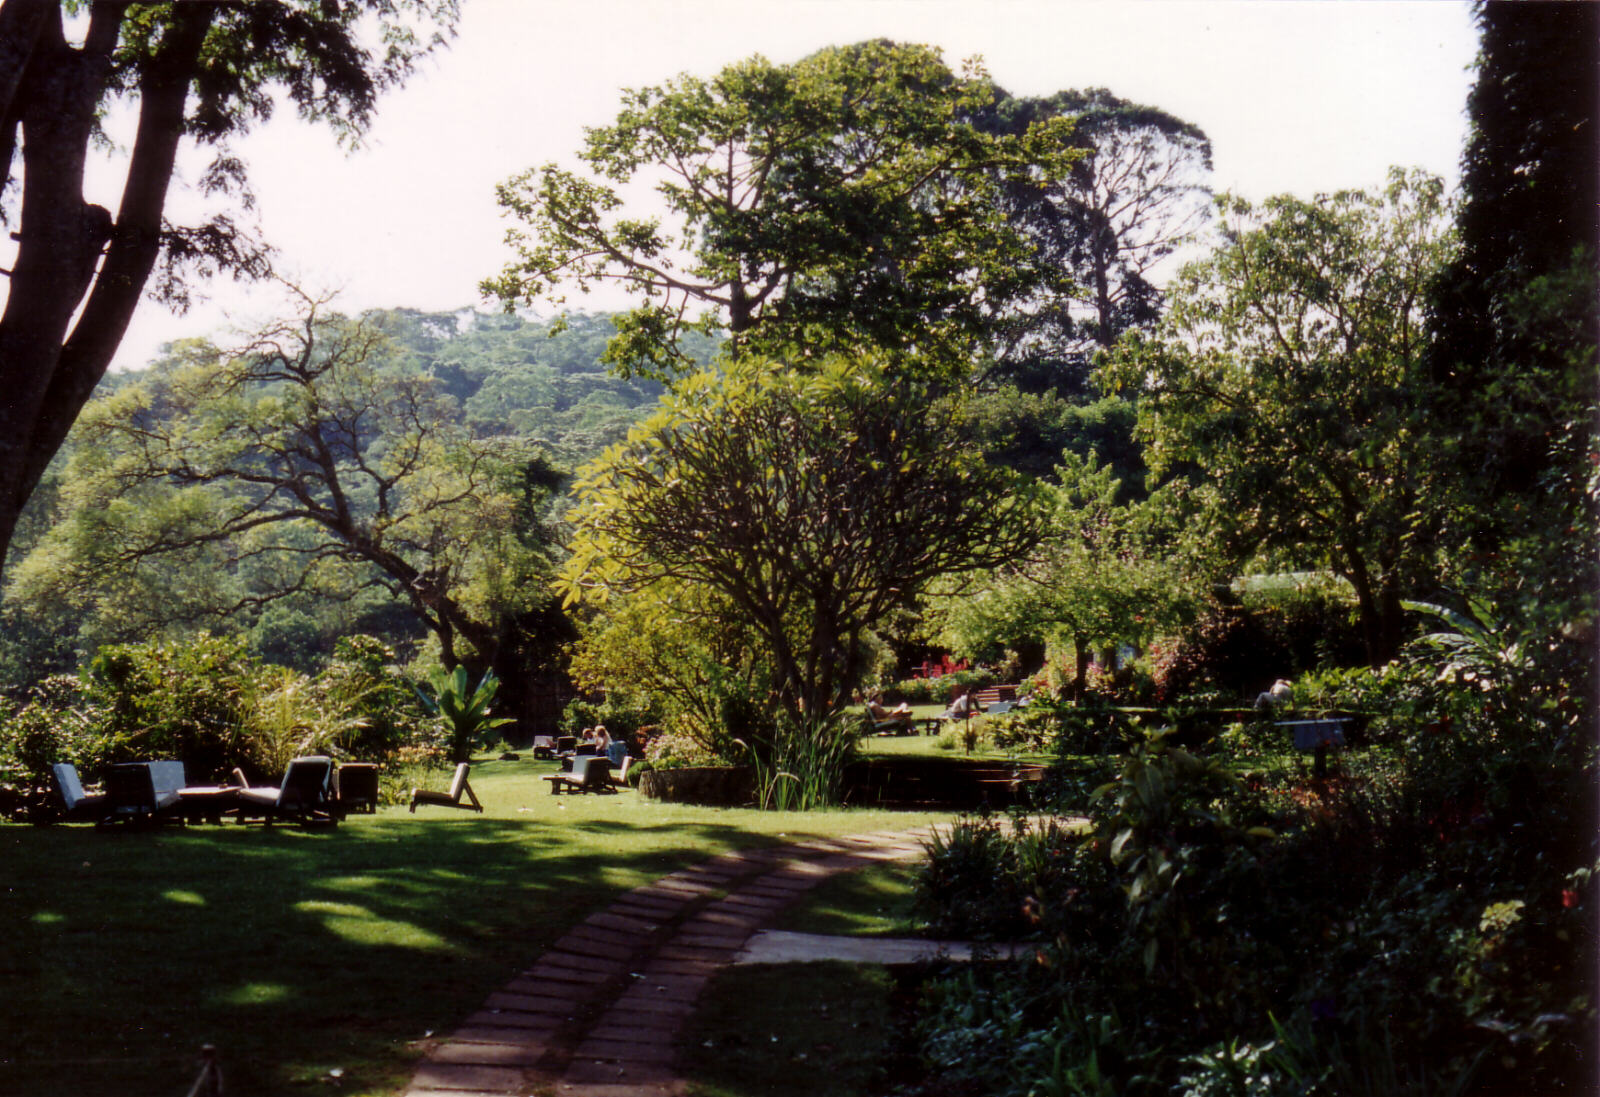 Gibbs Farm near Karatu, Tanzania